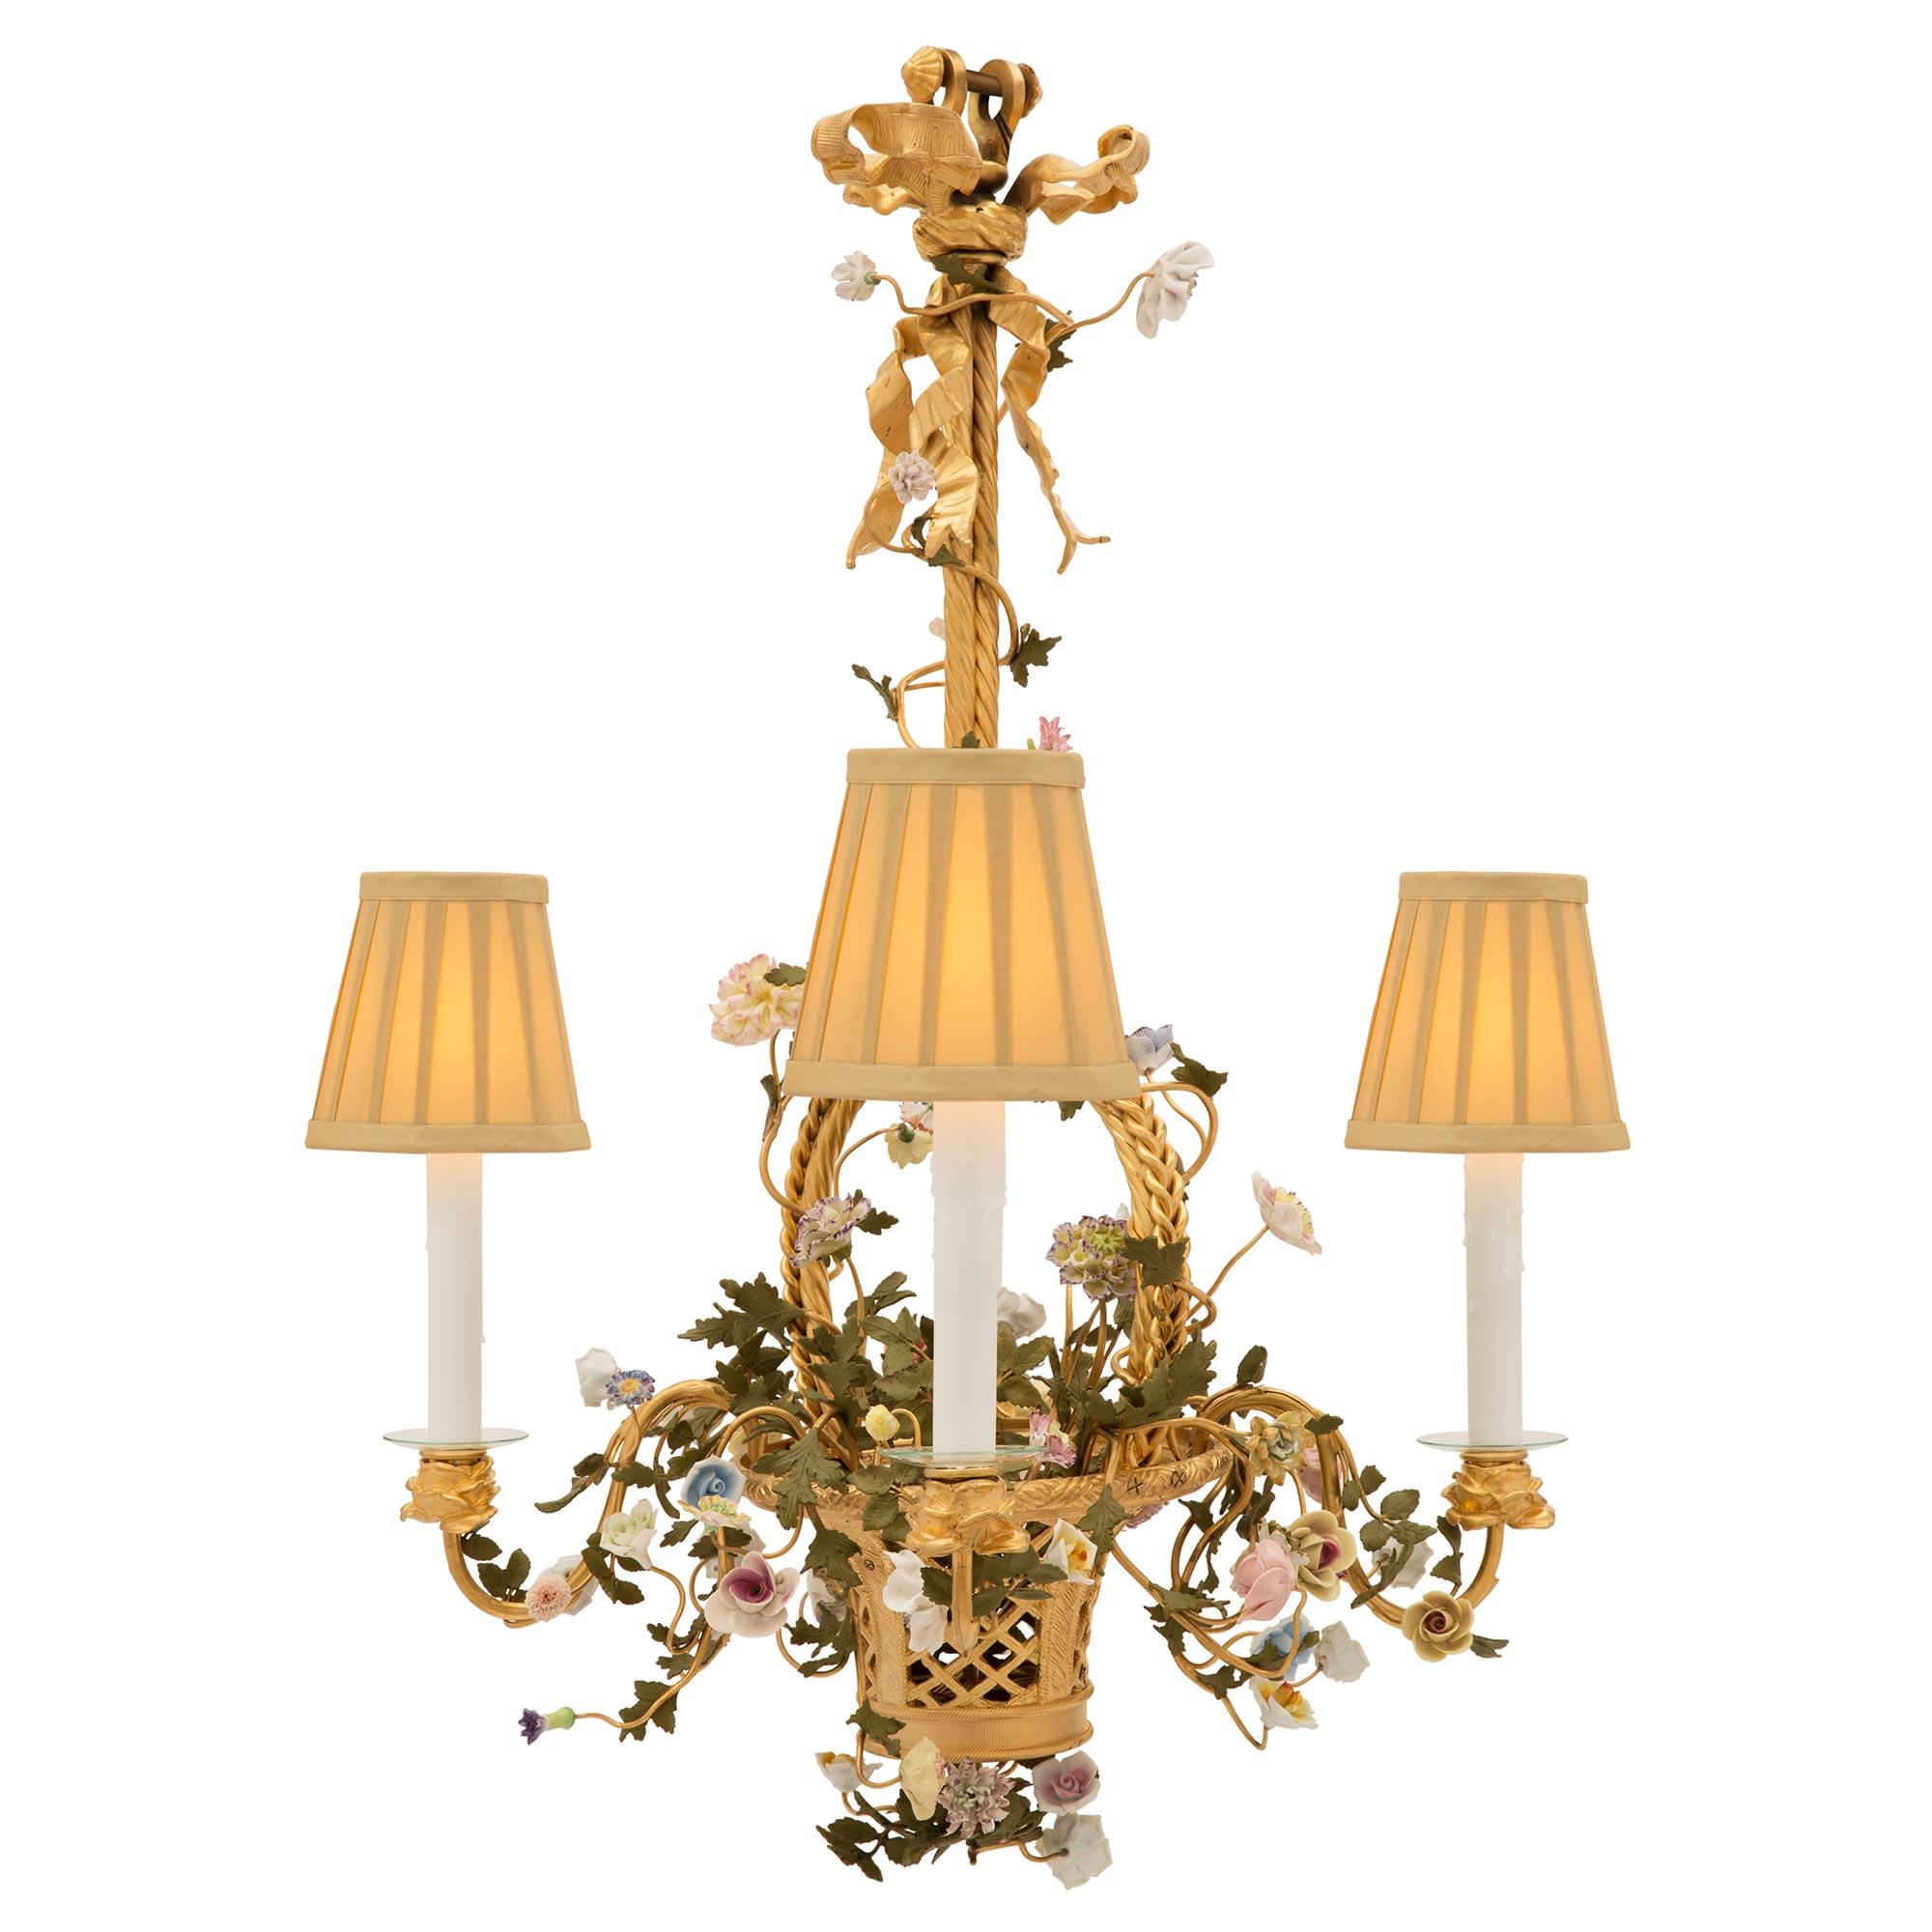 Un très beau et unique lustre à quatre bras de style Louis XVI du 19ème siècle en bronze doré, porcelaine de Saxe et métal patiné. Le lustre est centré par un charmant panier en bronze doré tressé, merveilleusement exécuté, d'où semblent sortir de